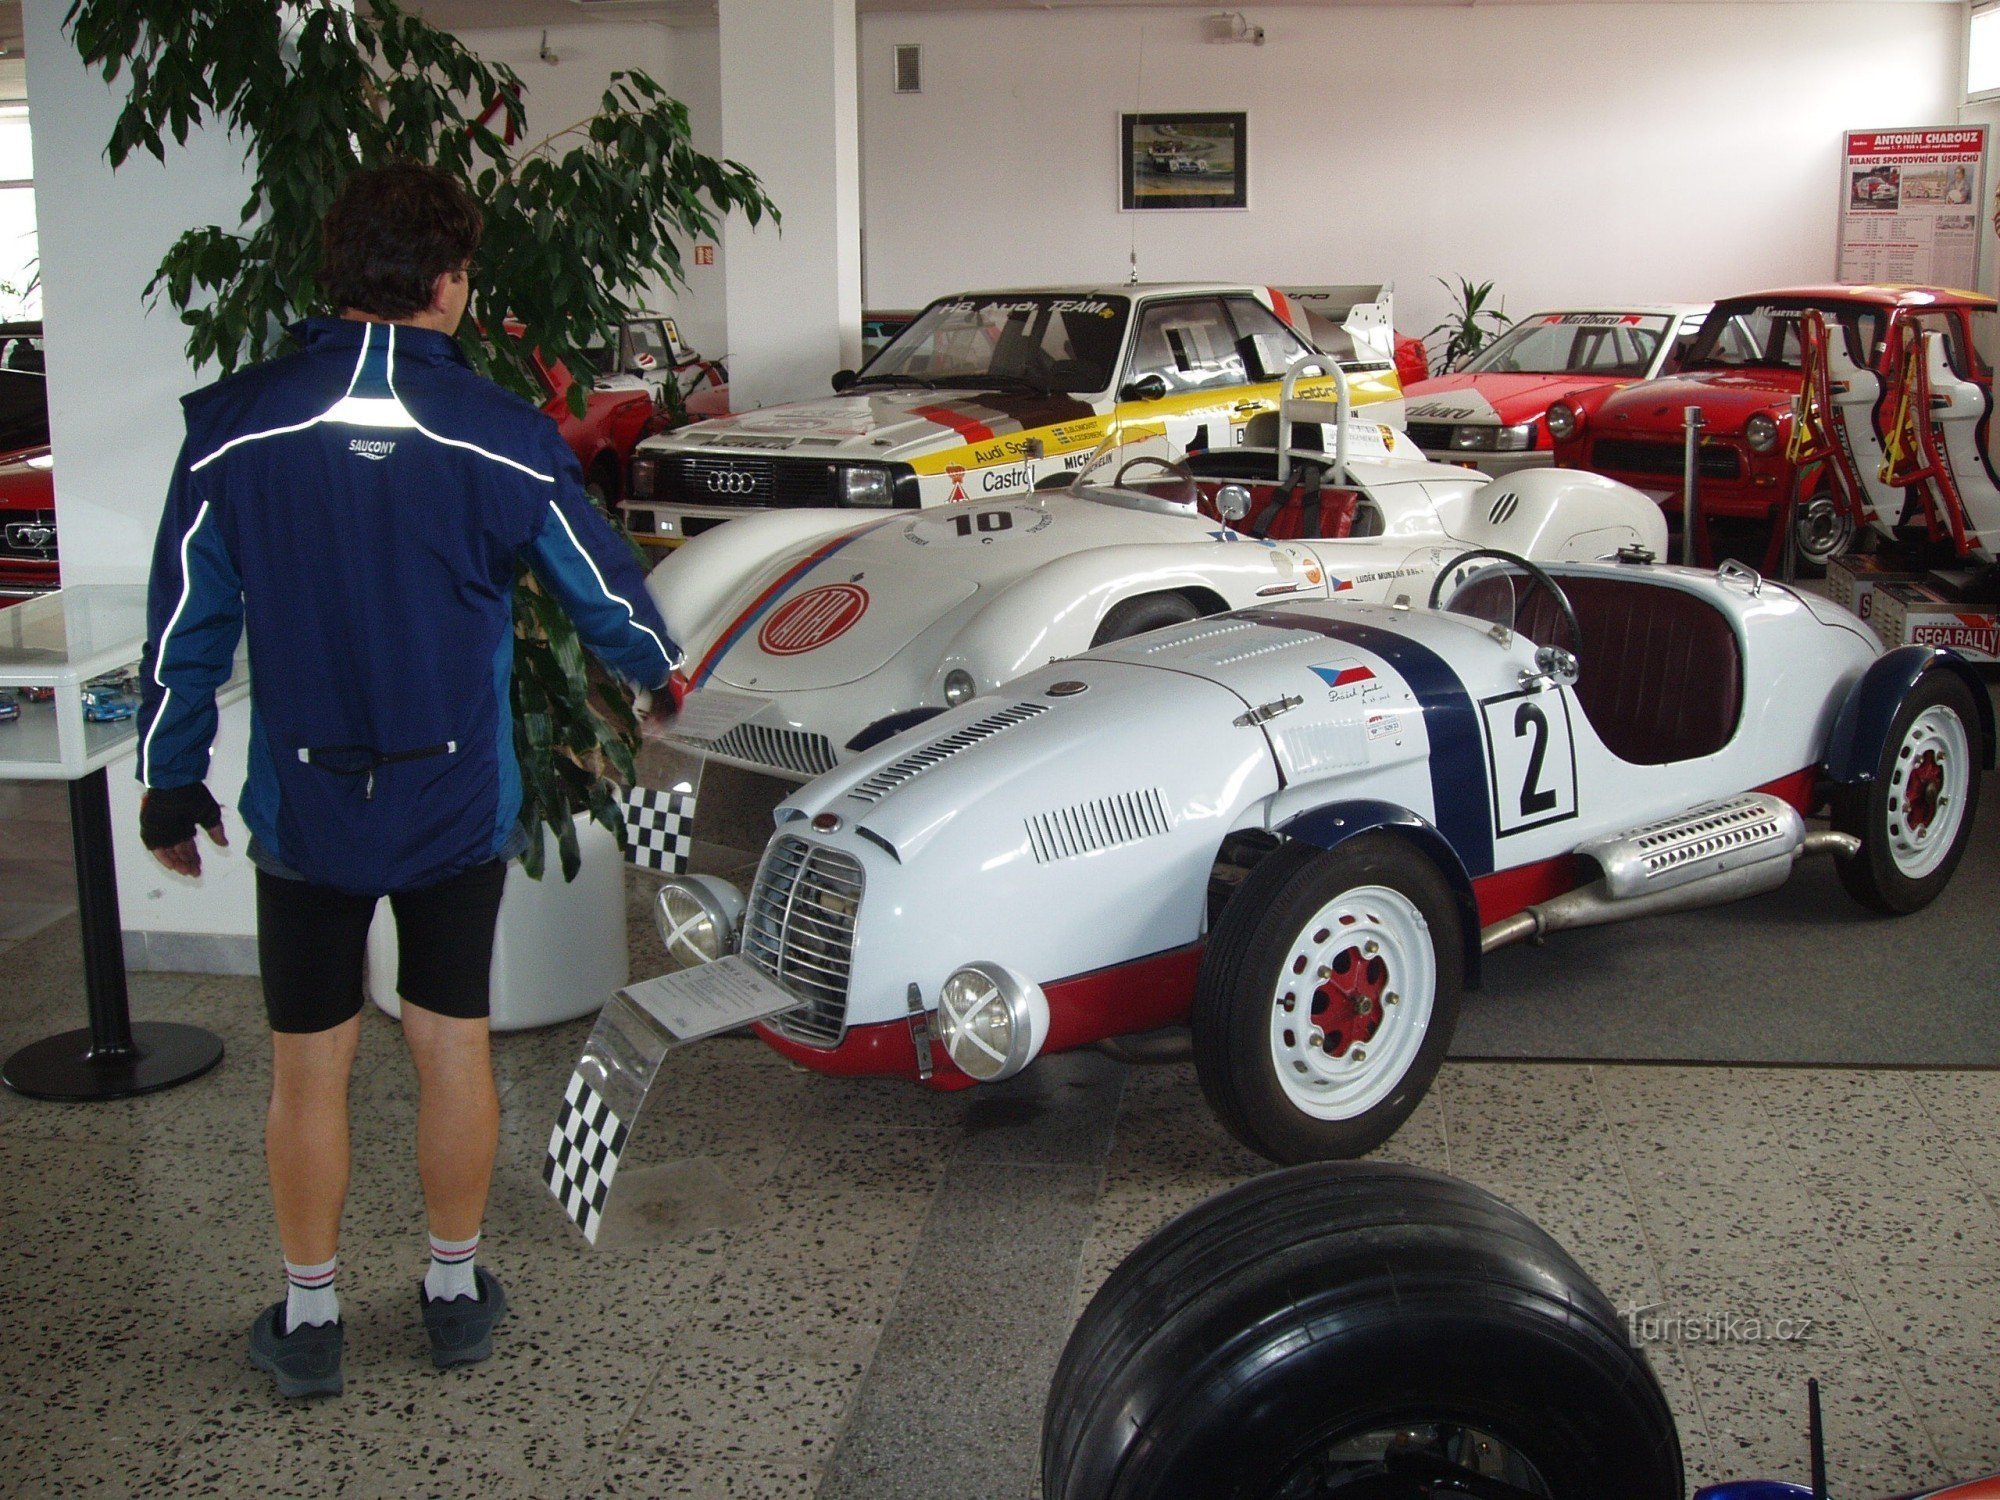 Fra Křivoklát til Lán for en rundvisning i Sports Car Museum